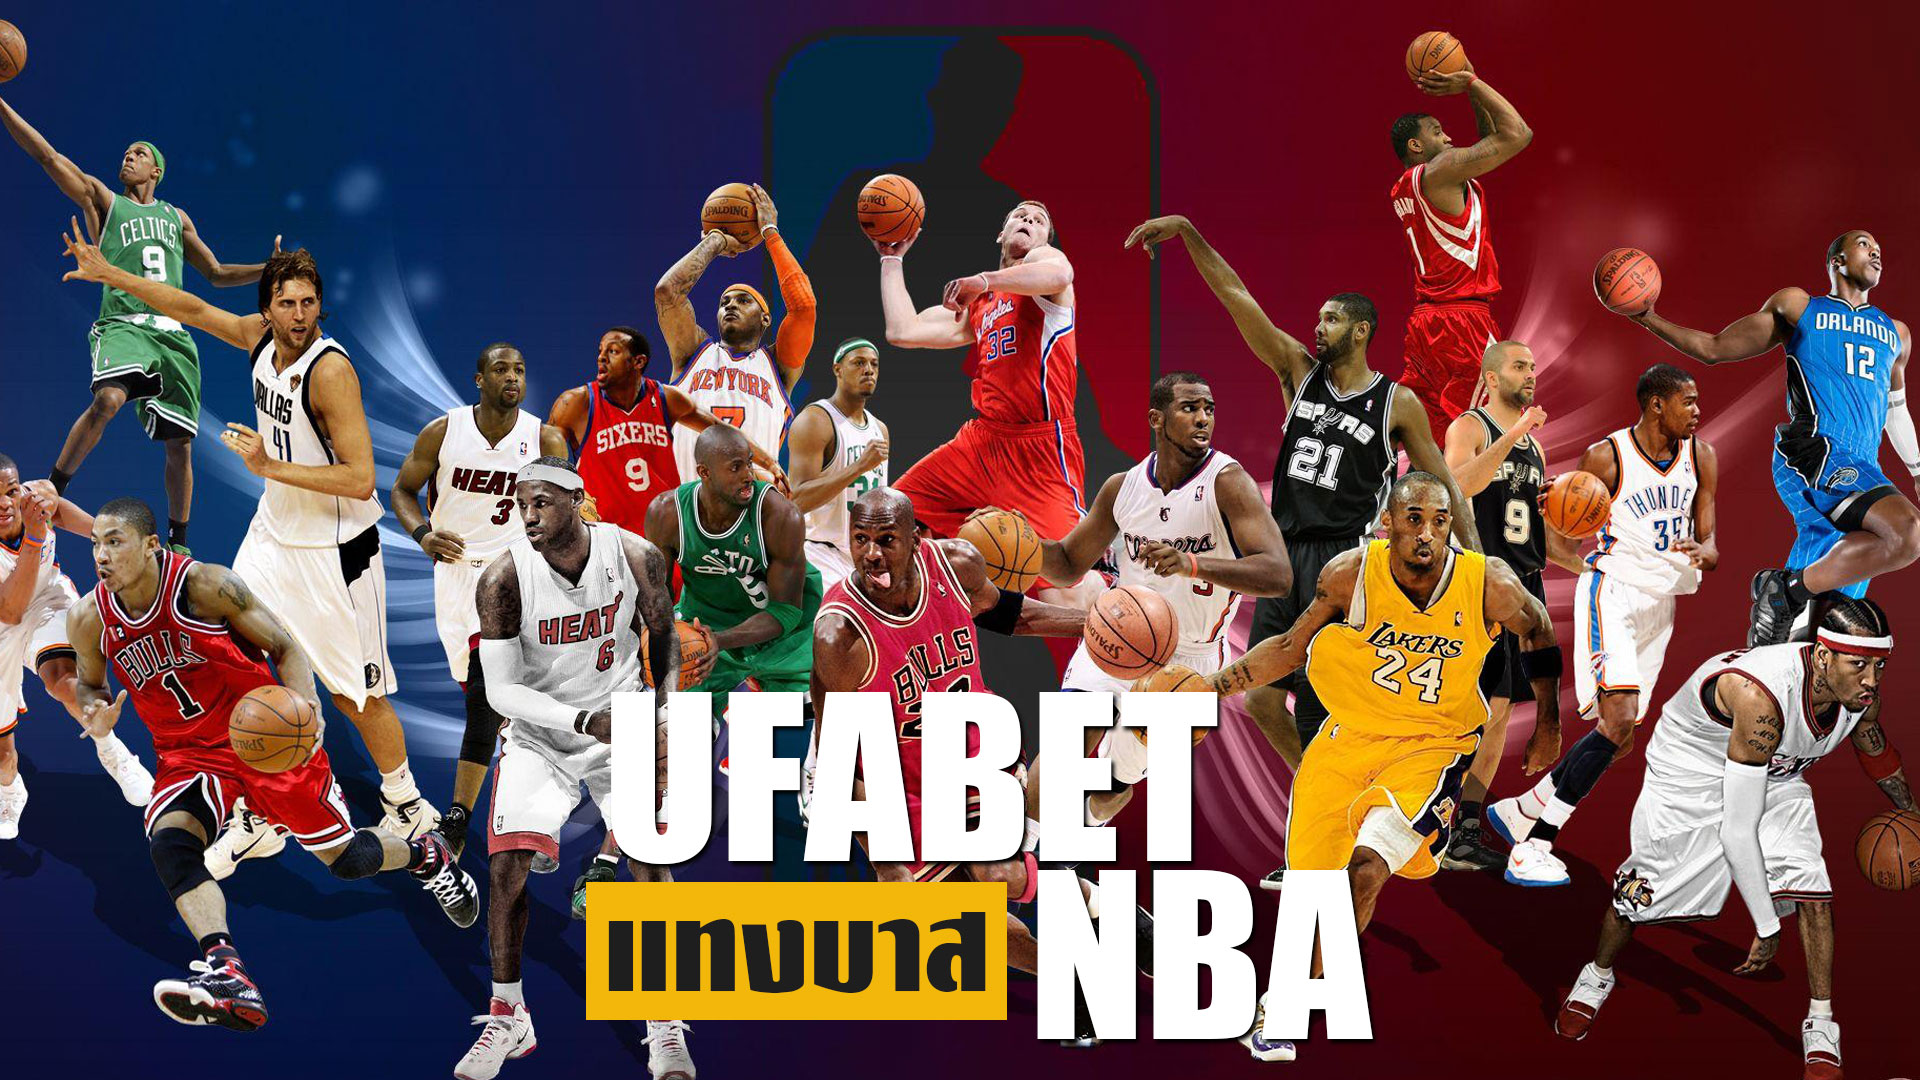 ufabet แทงบาส NBA เกมกีฬารูปแบบใหม่ ทายผลสนุก ลุ้นกำไรได้ทุกวัน